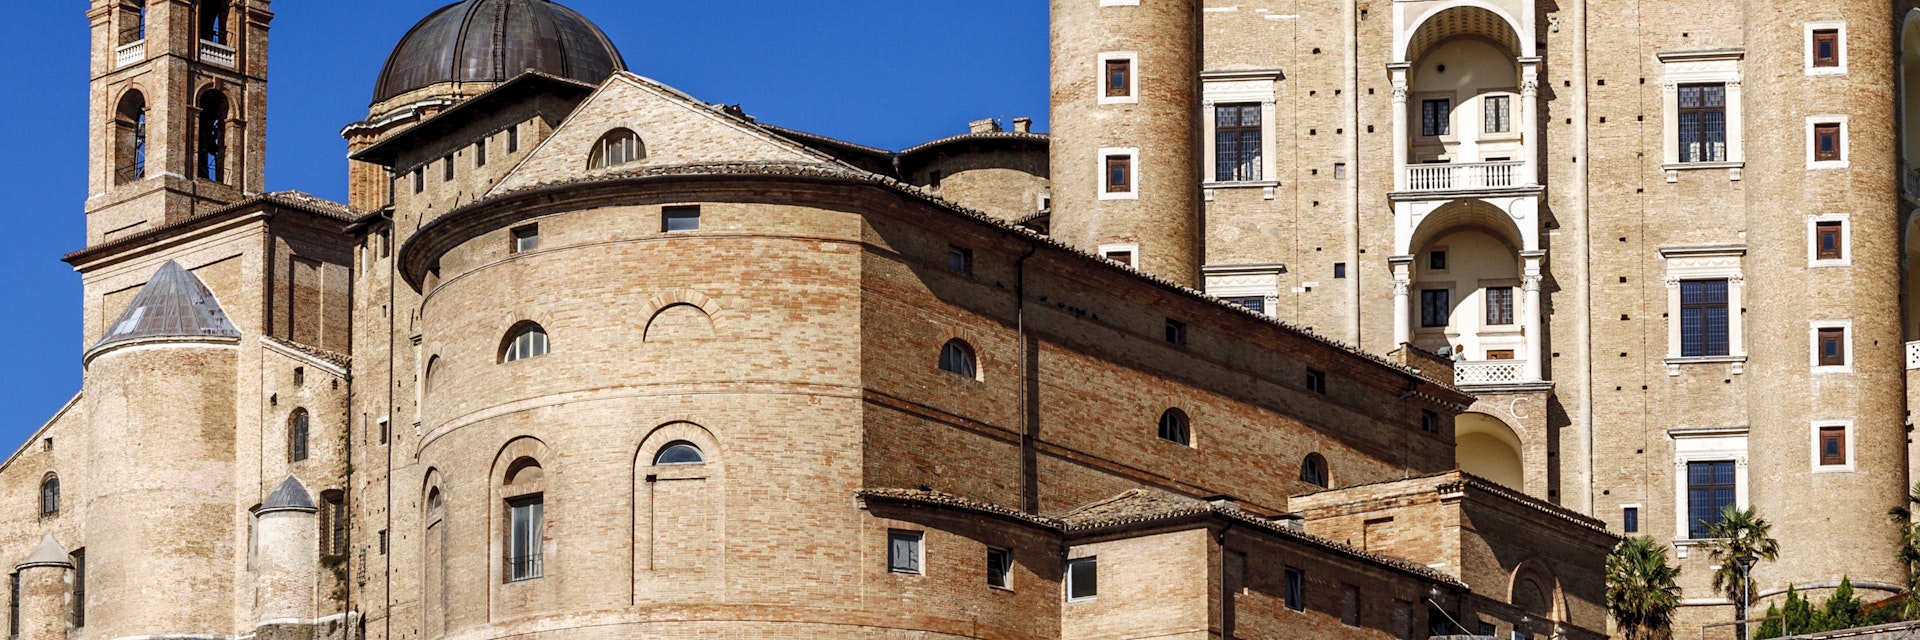 Italy, Le Marche, Urbino, Palazzo Ducale